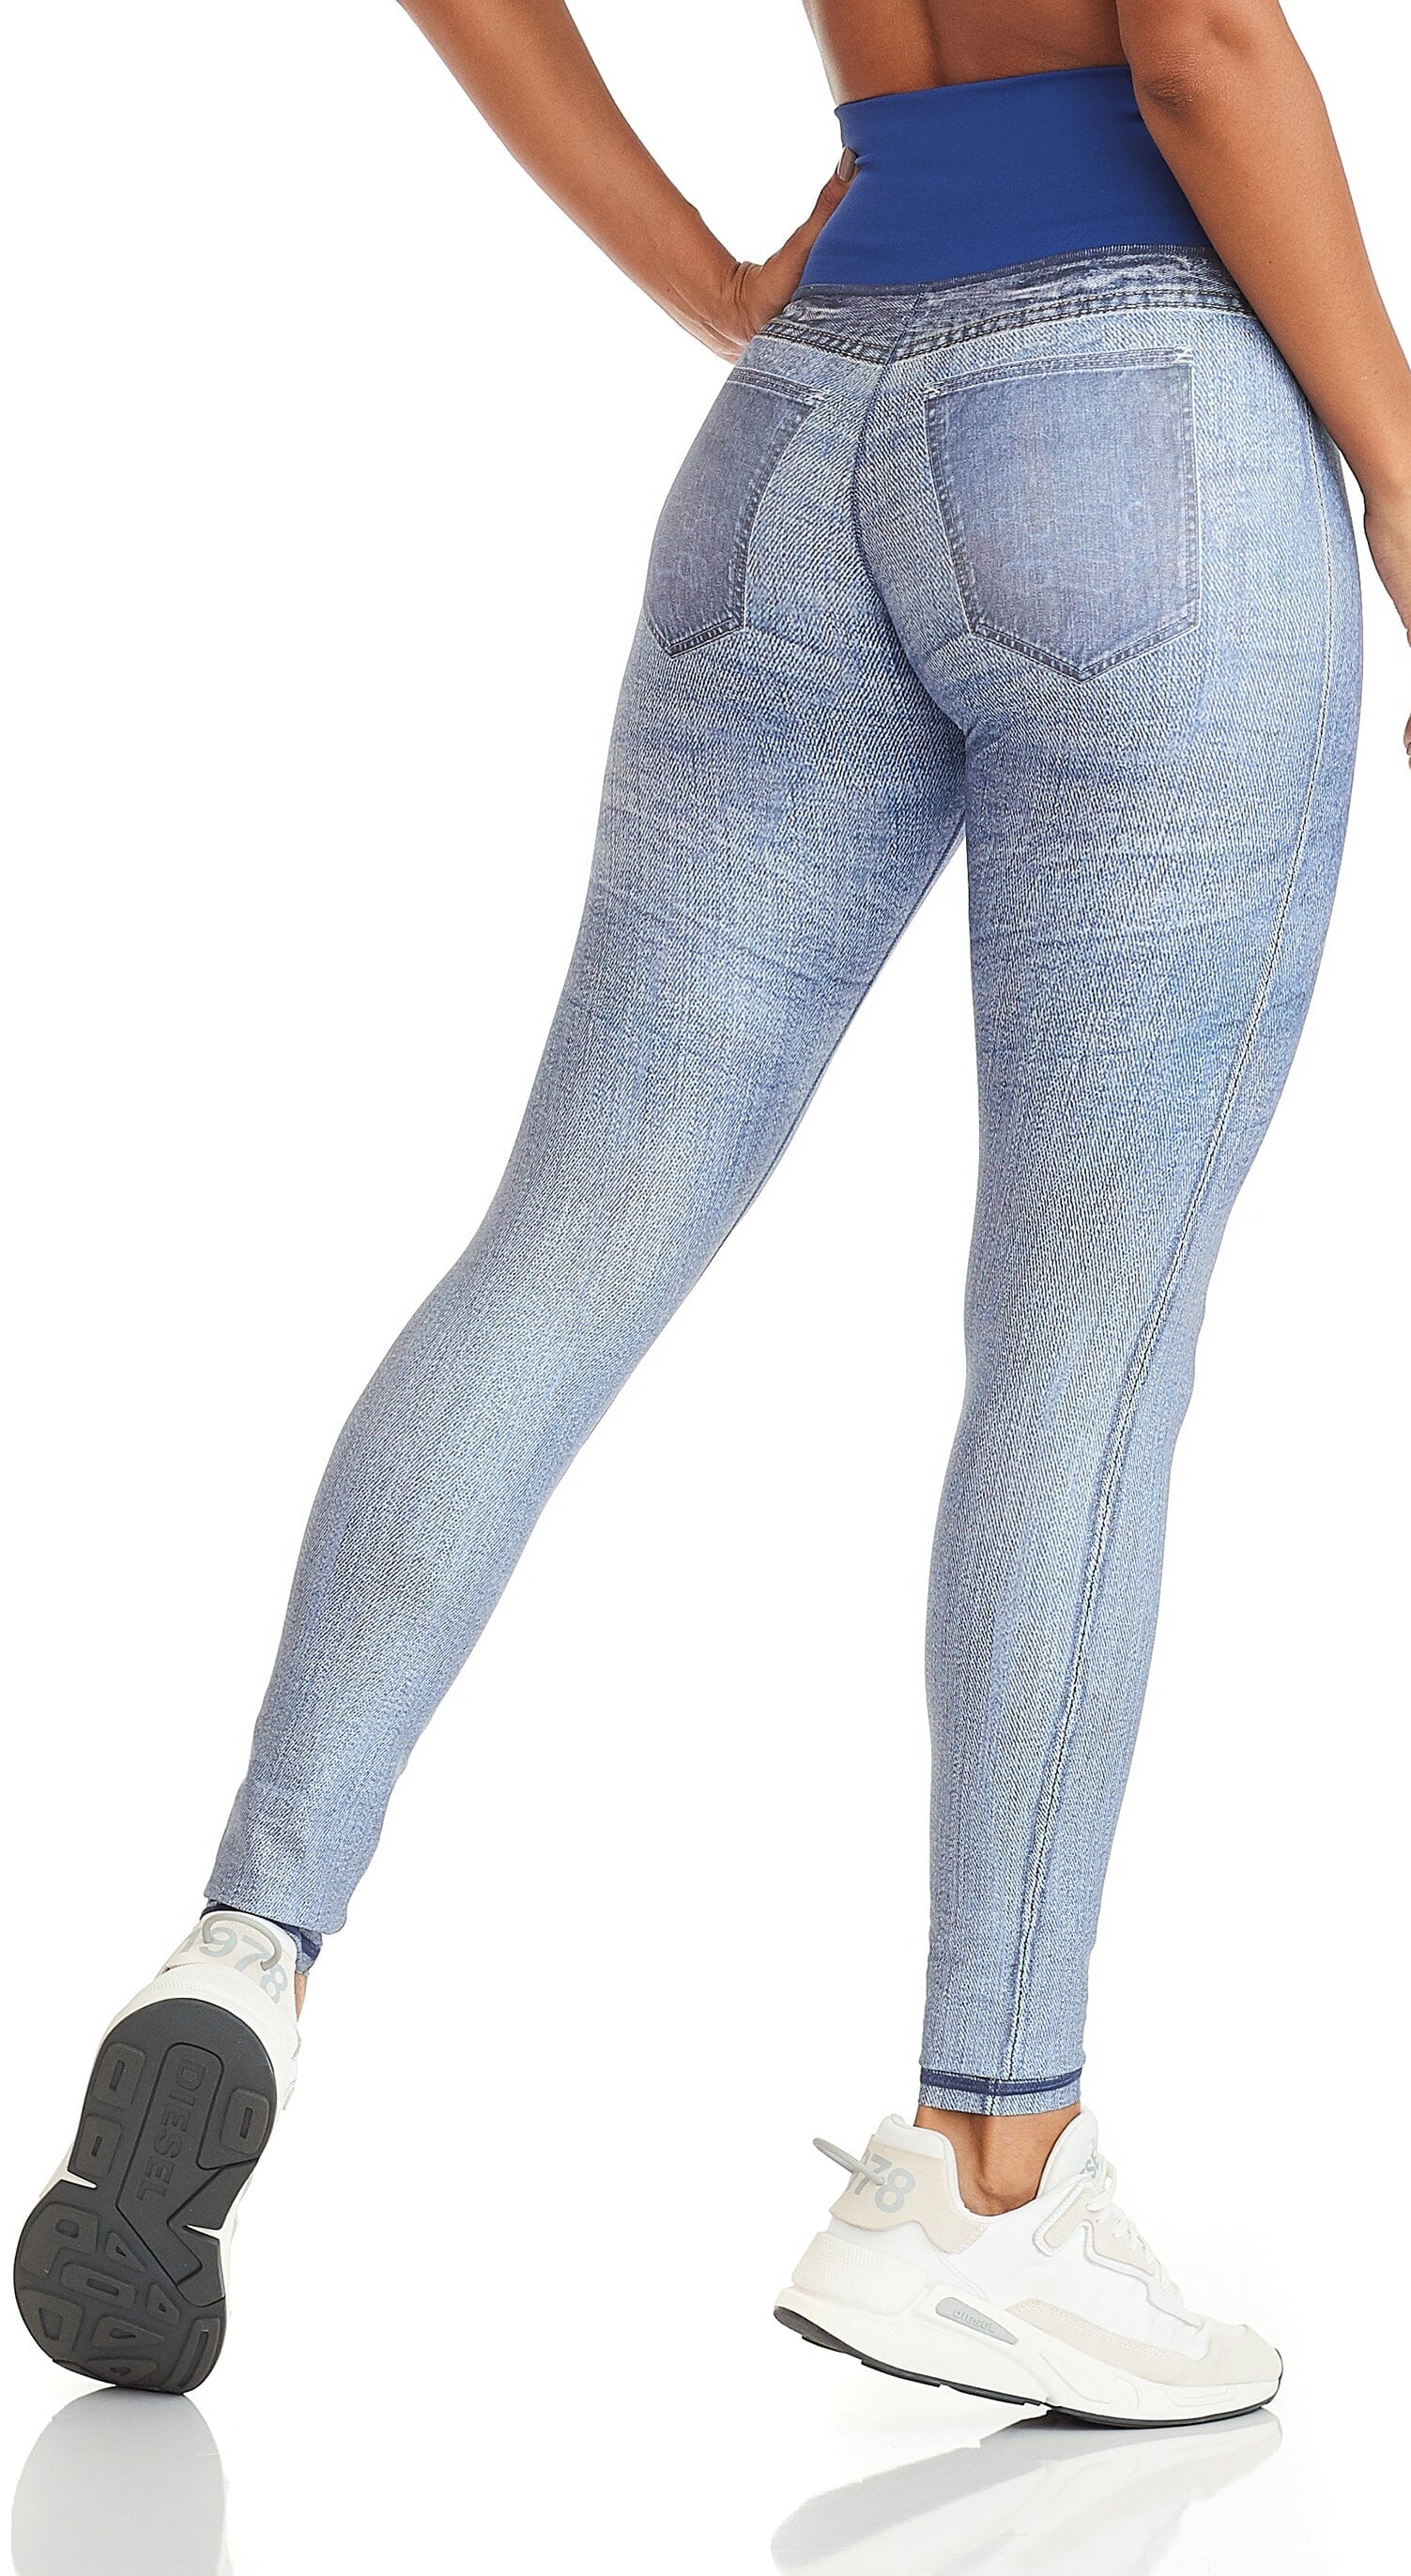 Reversible Legging - Premium Print & Fake Jeans